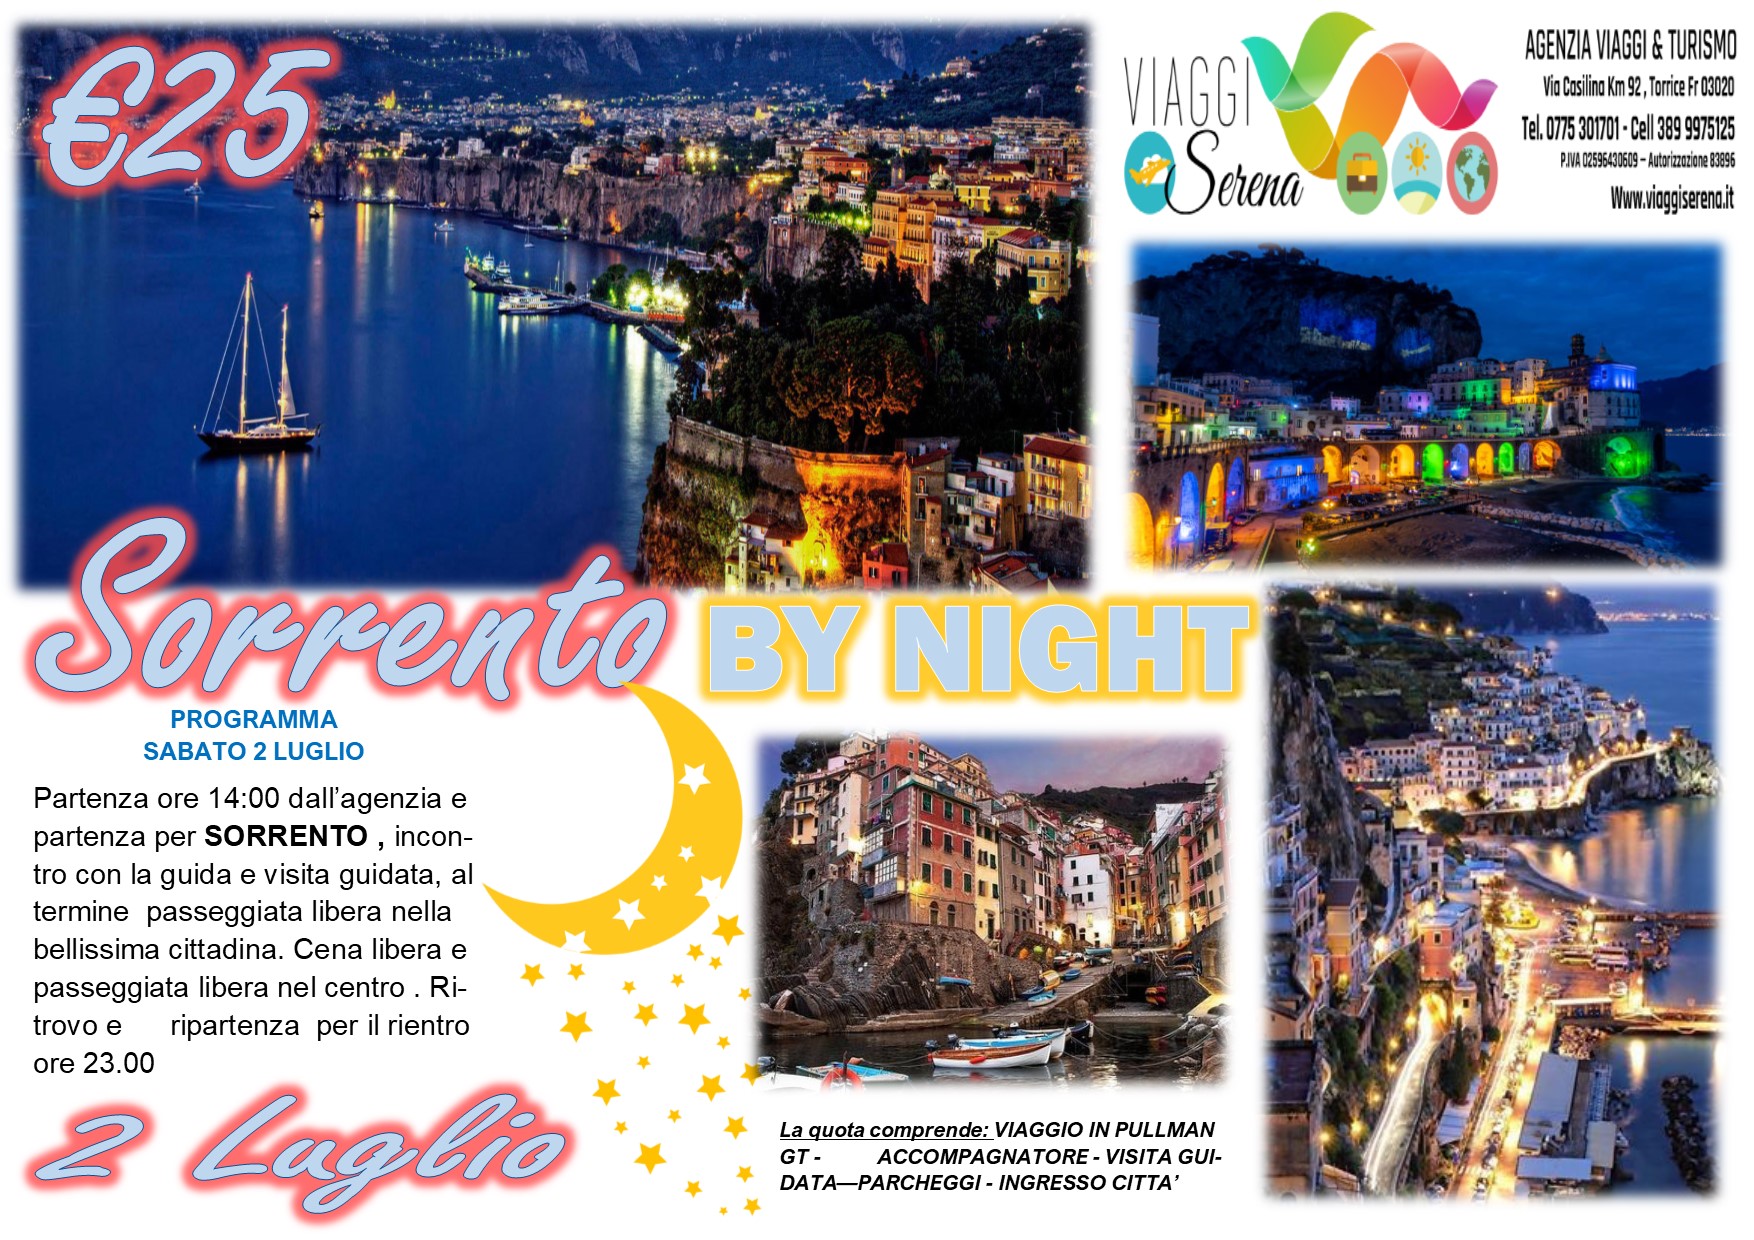 Viaggi di Gruppo: Sorrento by night 2 Luglio €25,00